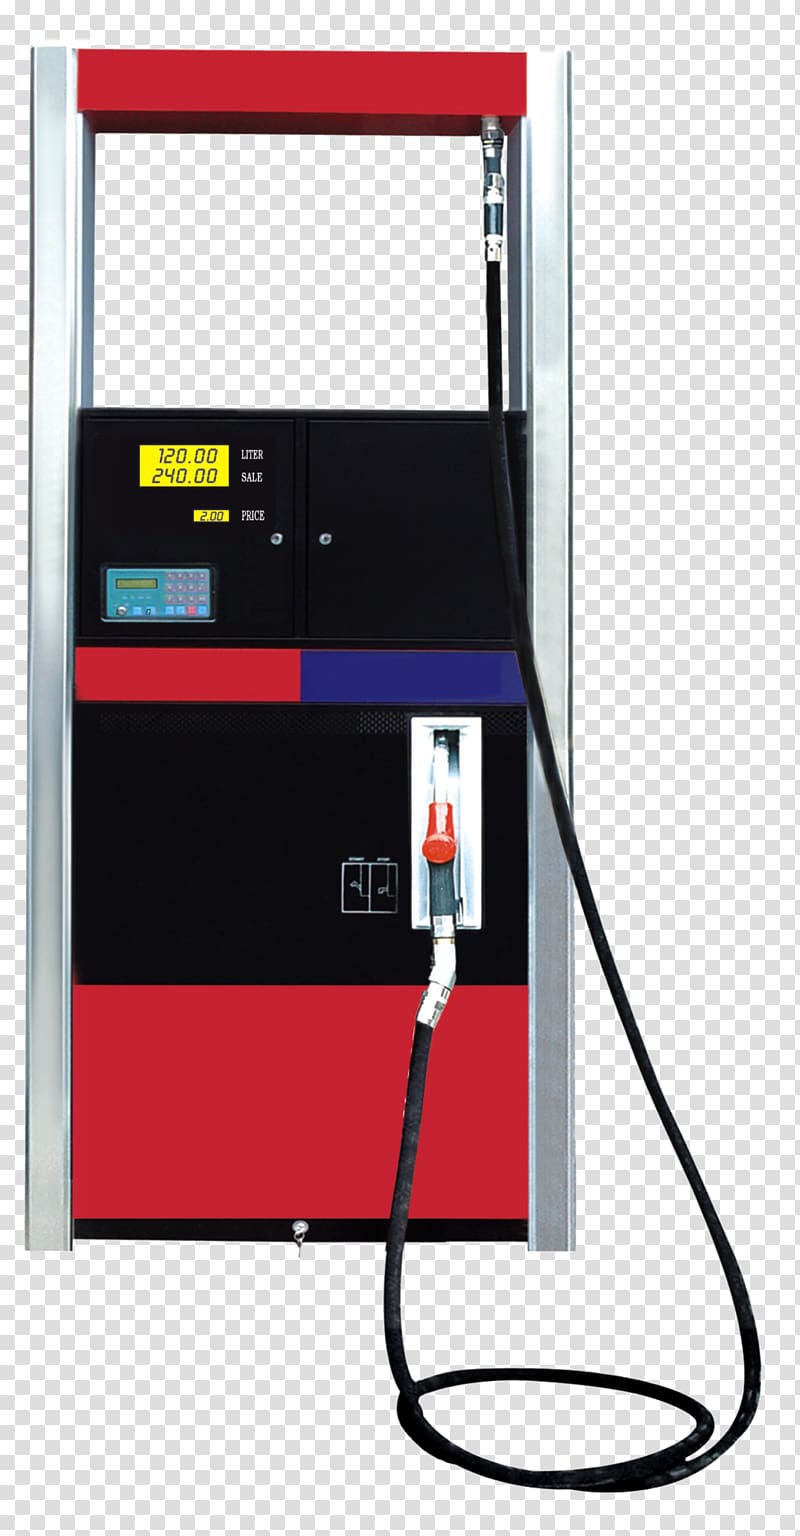 Fuel dispenser Pump Manufacturing Filling station, Fuel Dispenser transparent background PNG clipart